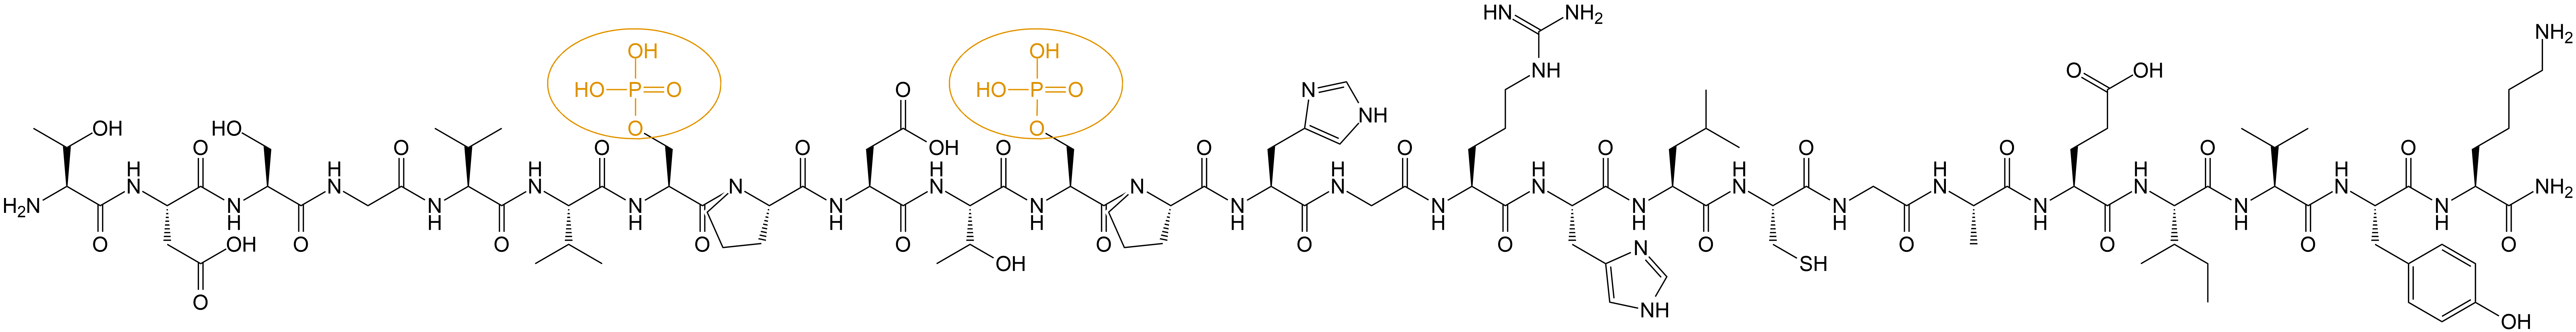 磷酸化多肽合成结构(专肽生物www.allpeptide.com)